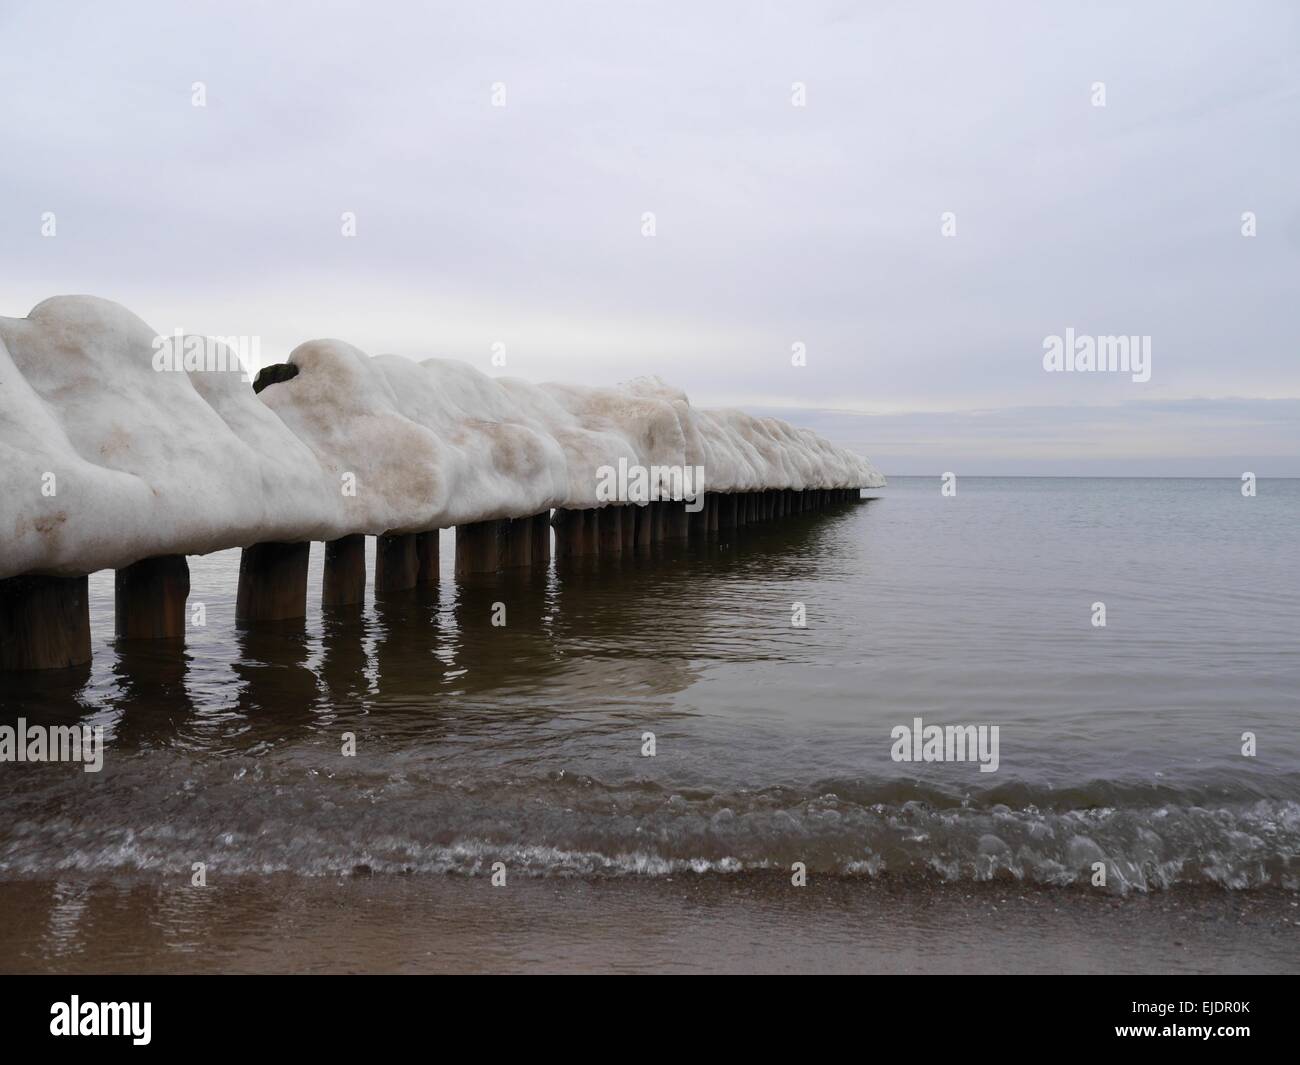 Brise-lames couvertes de glace sur fond de mer Banque D'Images